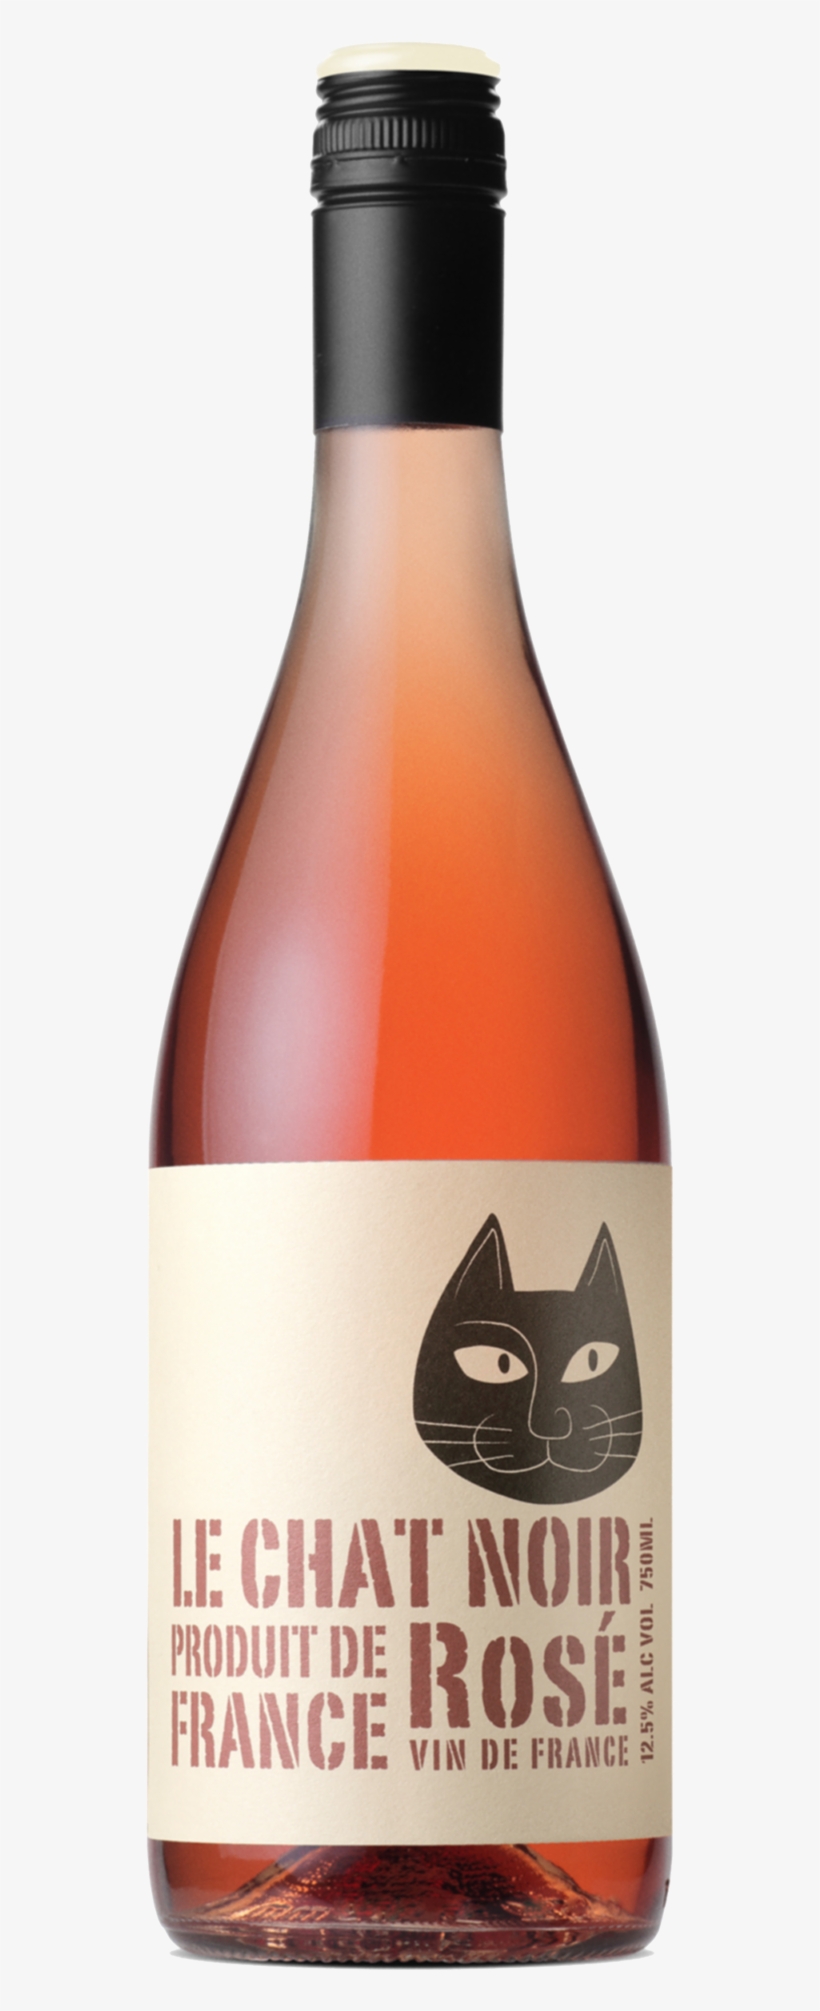 Le Chat Noir Rosé - Le Chat Noir Aude Valley Rosé 2015, transparent png #1363989